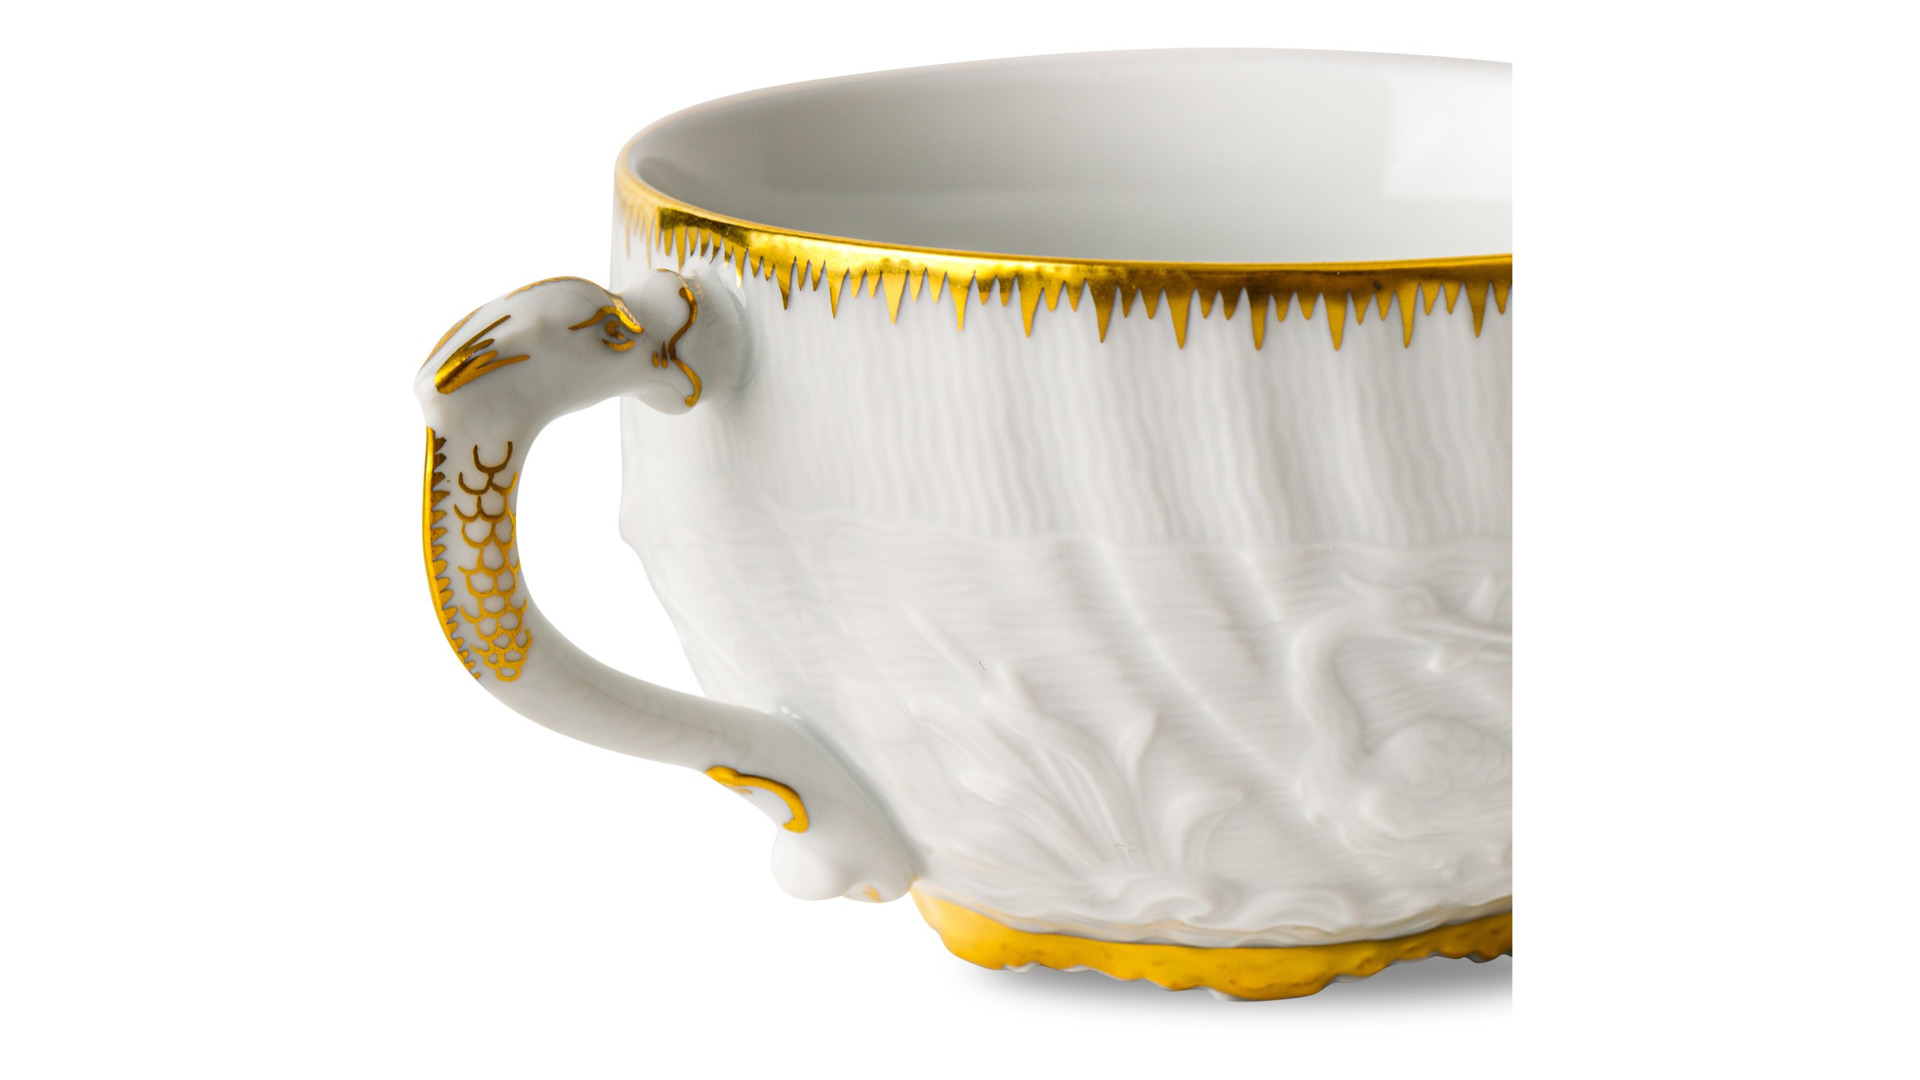 Сервиз чайный Meissen Лебединый сервиз Золотой кант на 6 персон 20 предметов, фарфор